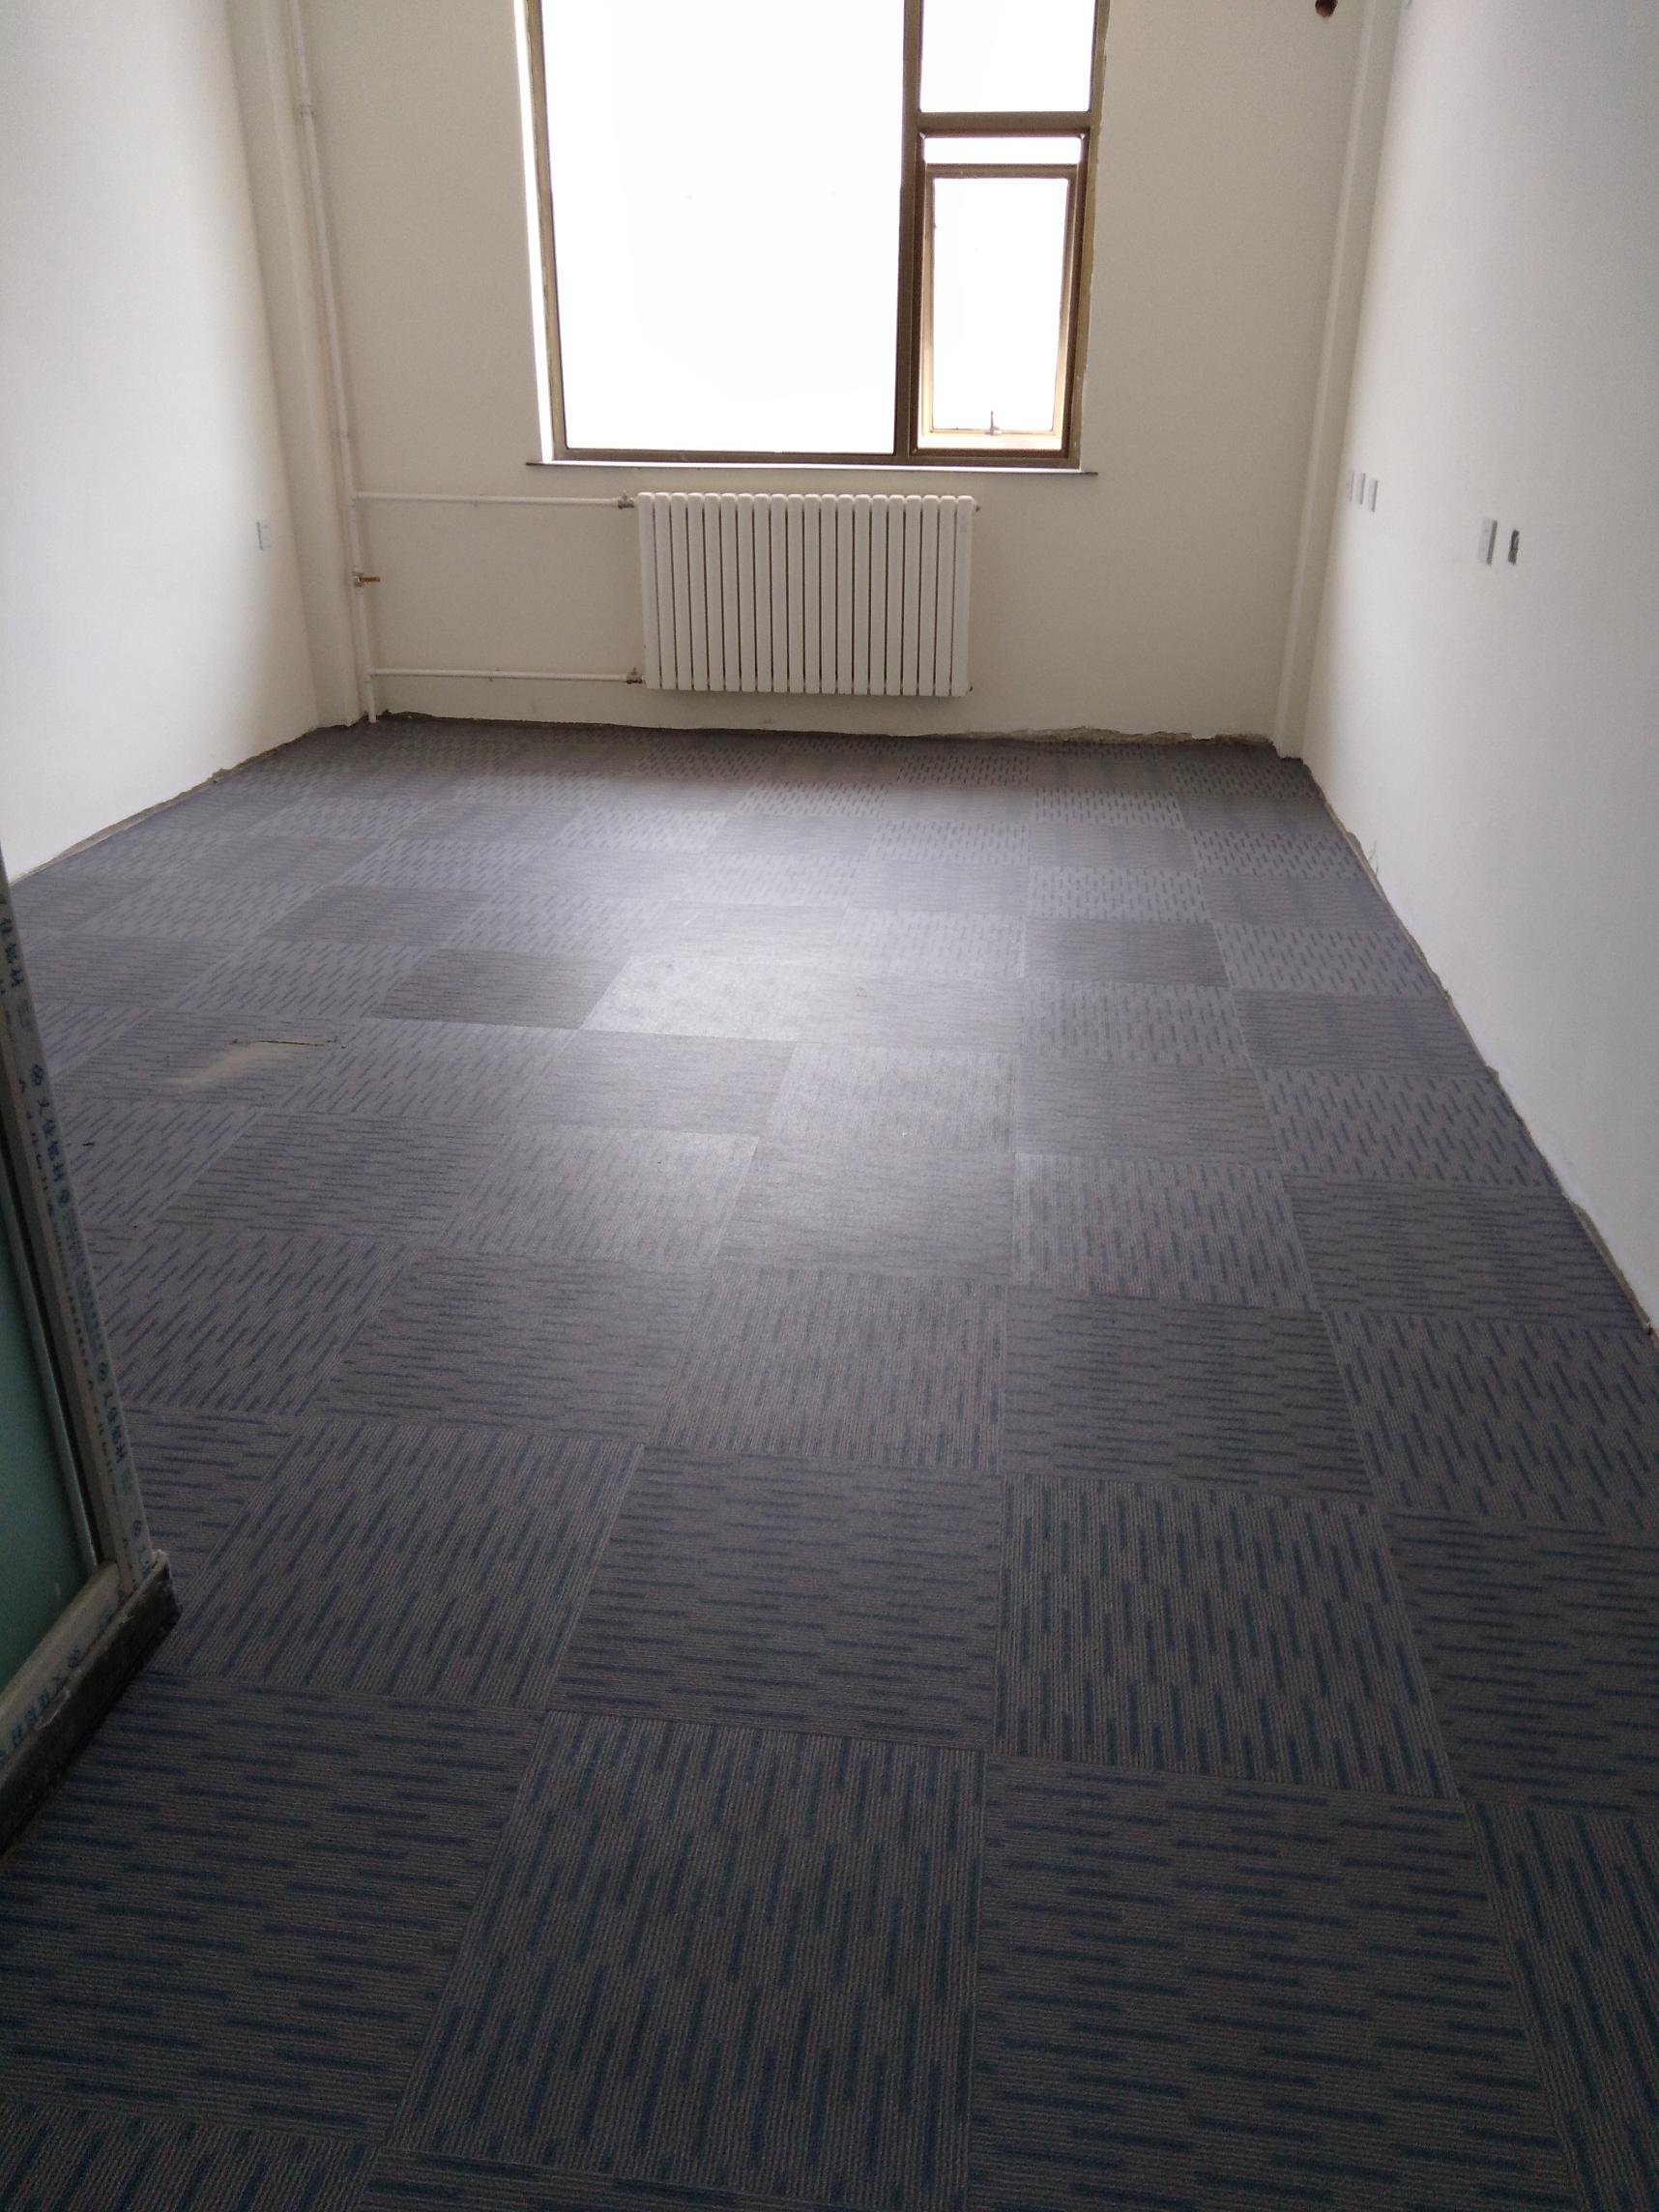 房间铺完PVC地板的效果图